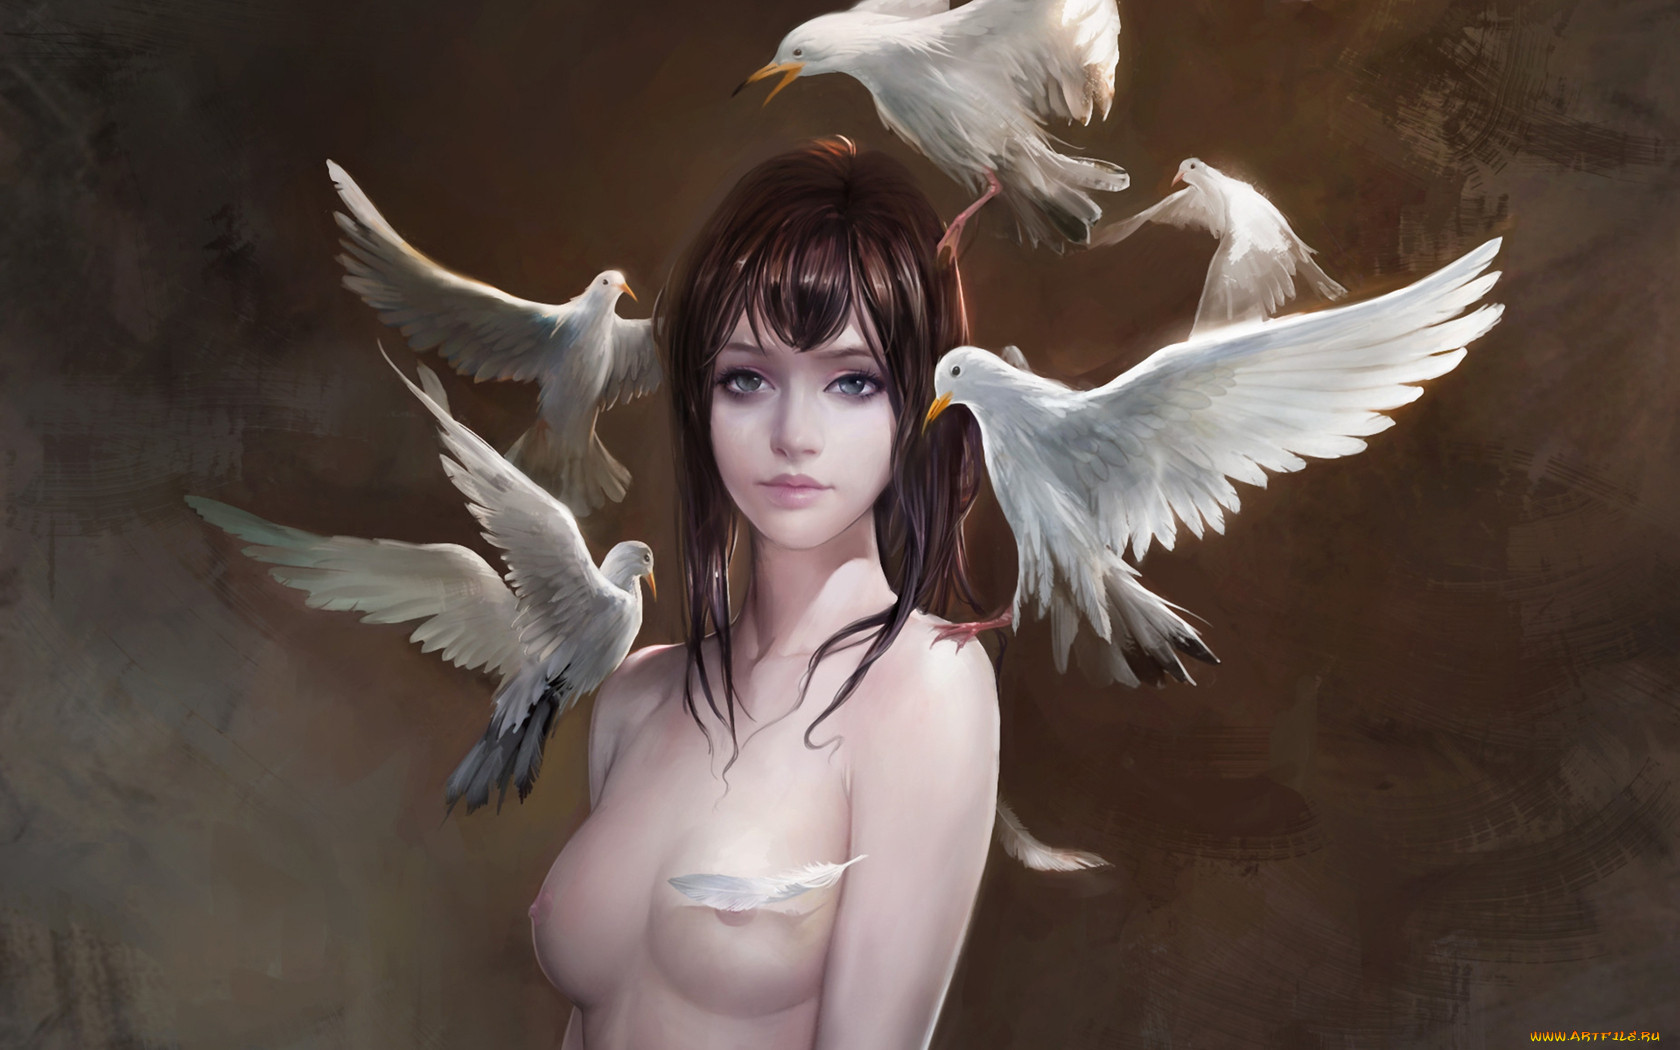 Beauty bird nude - 🧡 Татуировка на боку девушки - жар птица - KissMyTattoo...